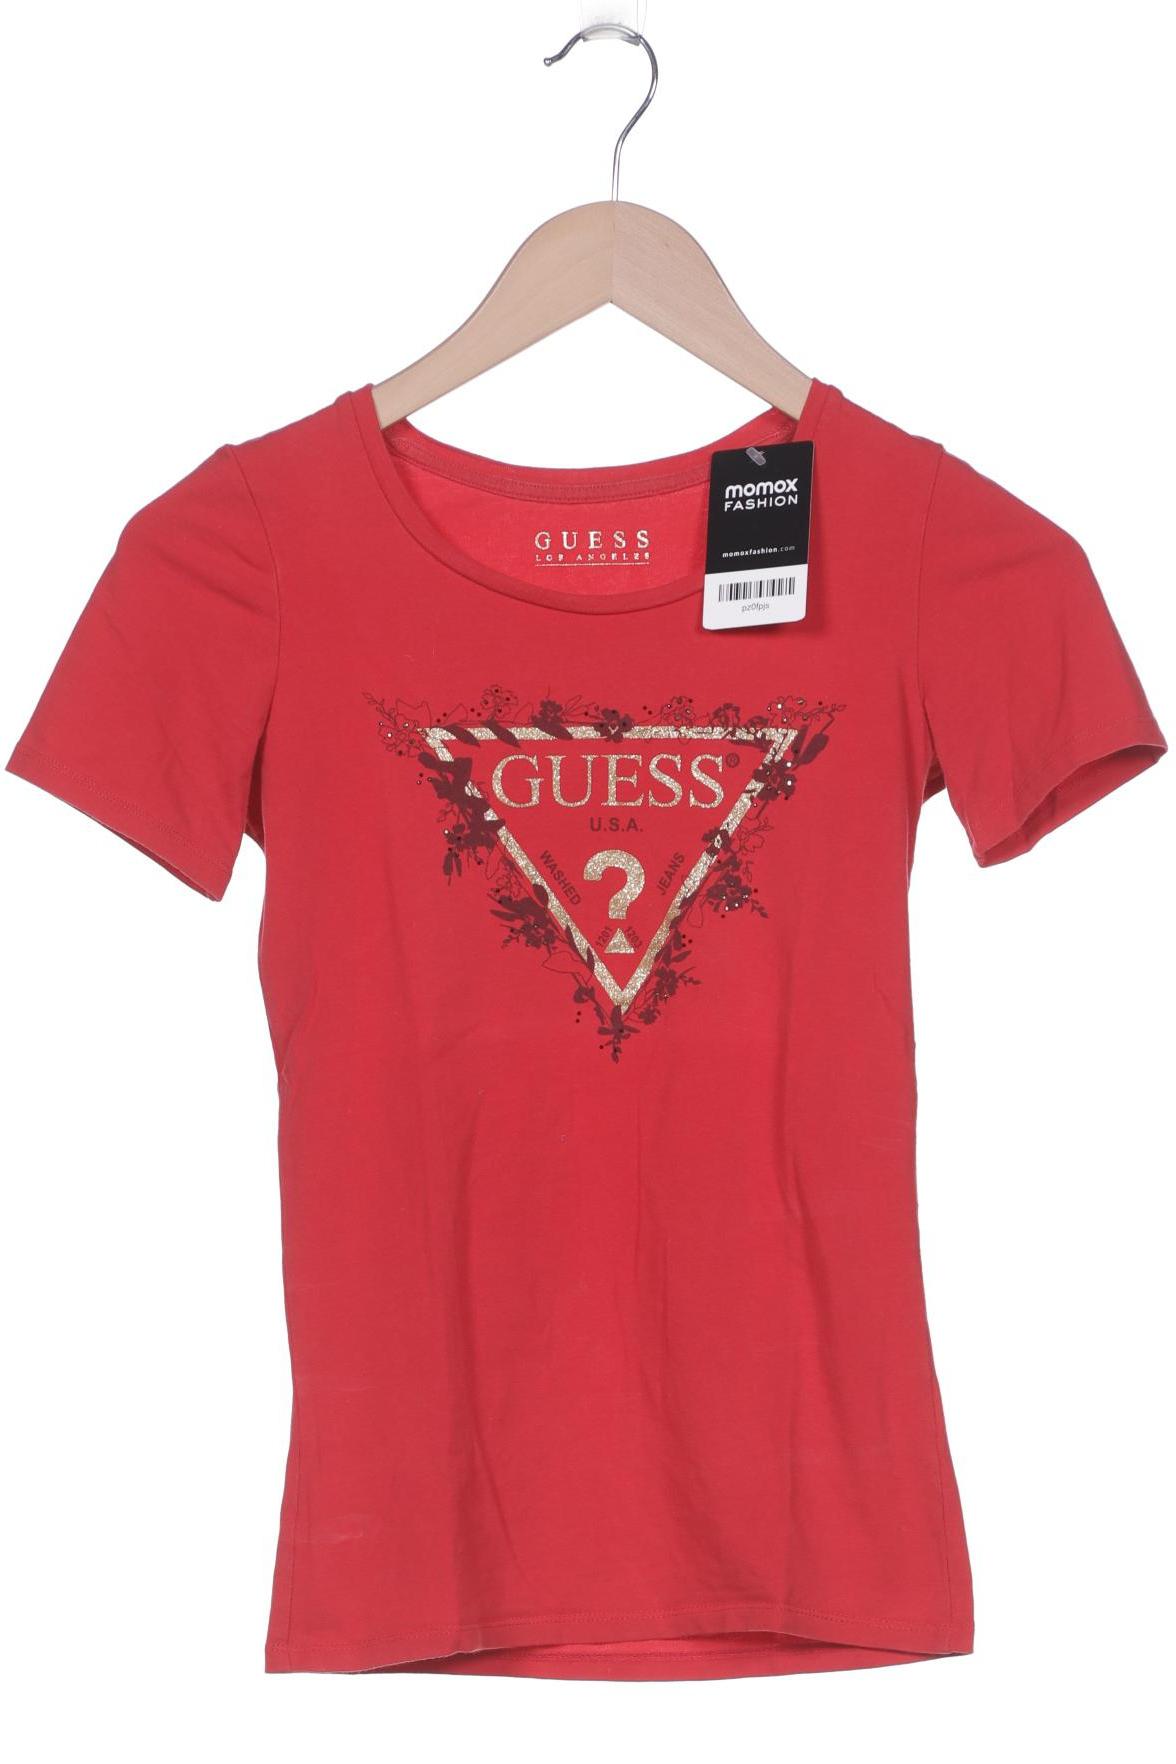 GUESS Damen T-Shirt, rot von Guess